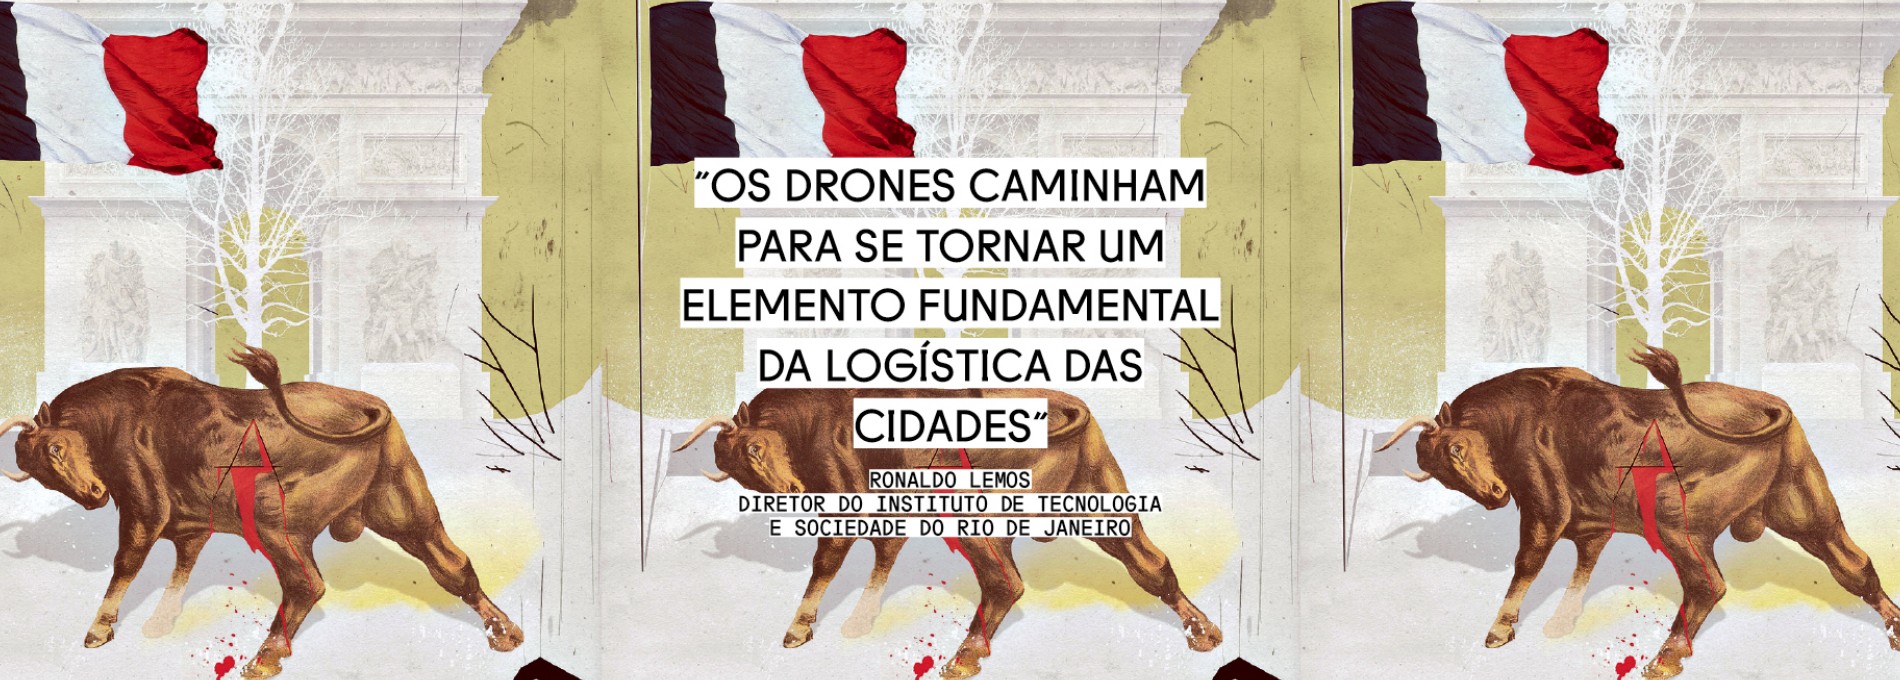 Drones tomarão os céus, por Ronaldo Lemos